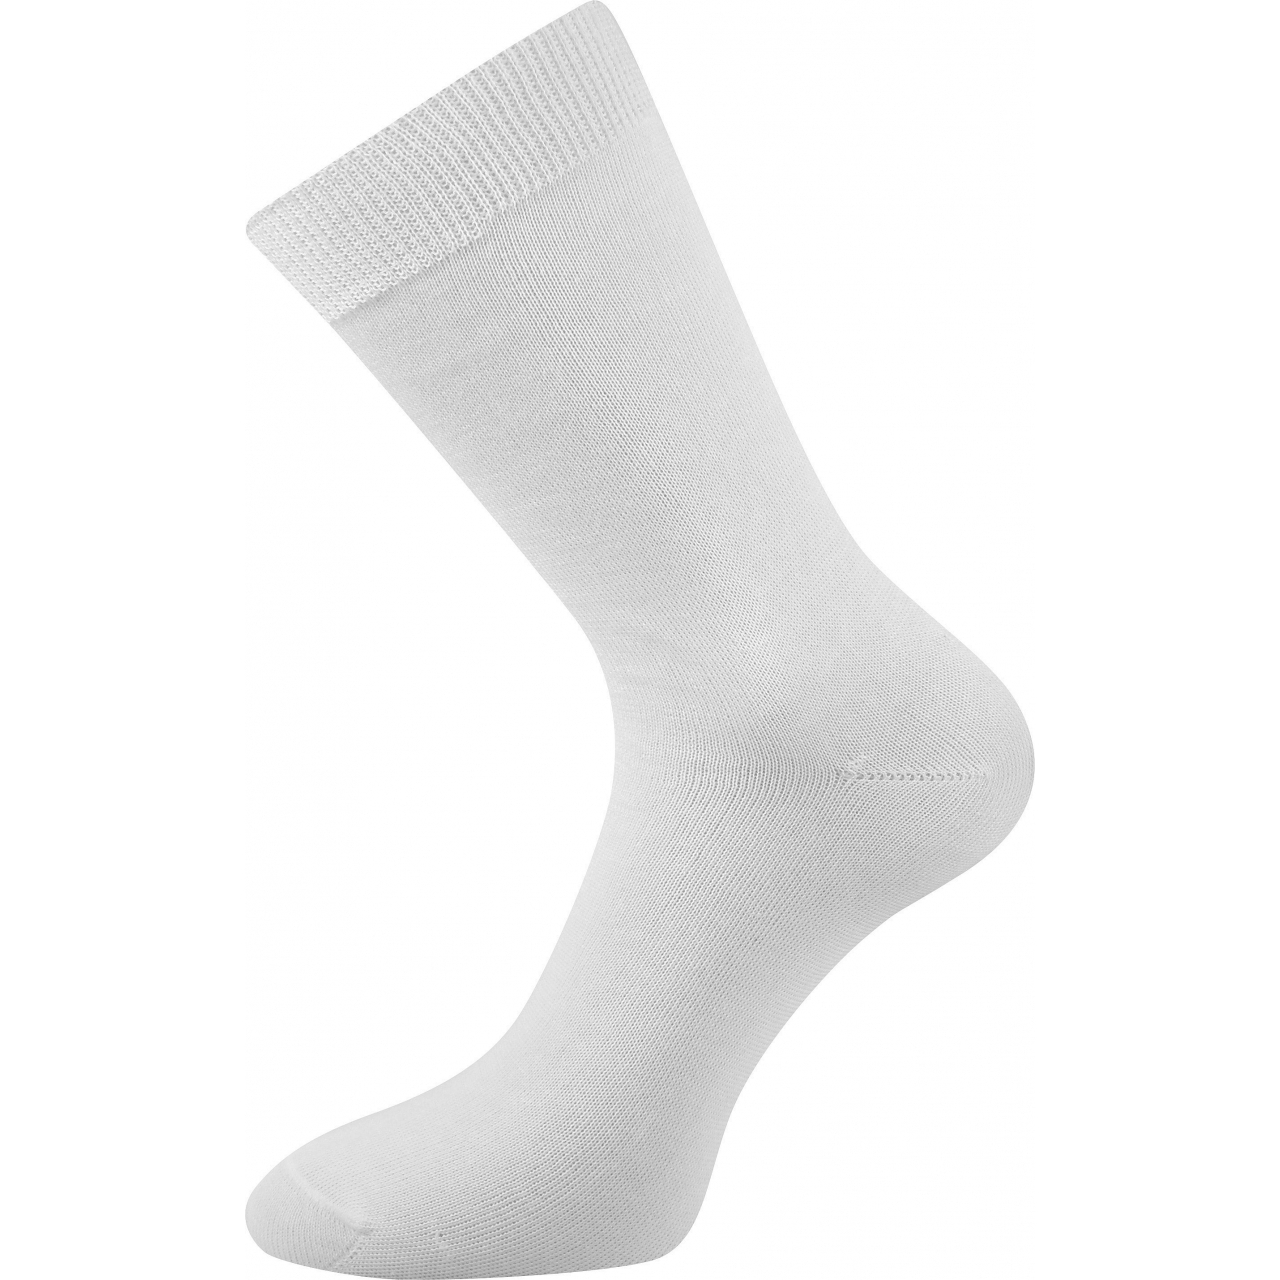 Ponožky dámské Lonka Fany - bílé, 38-39